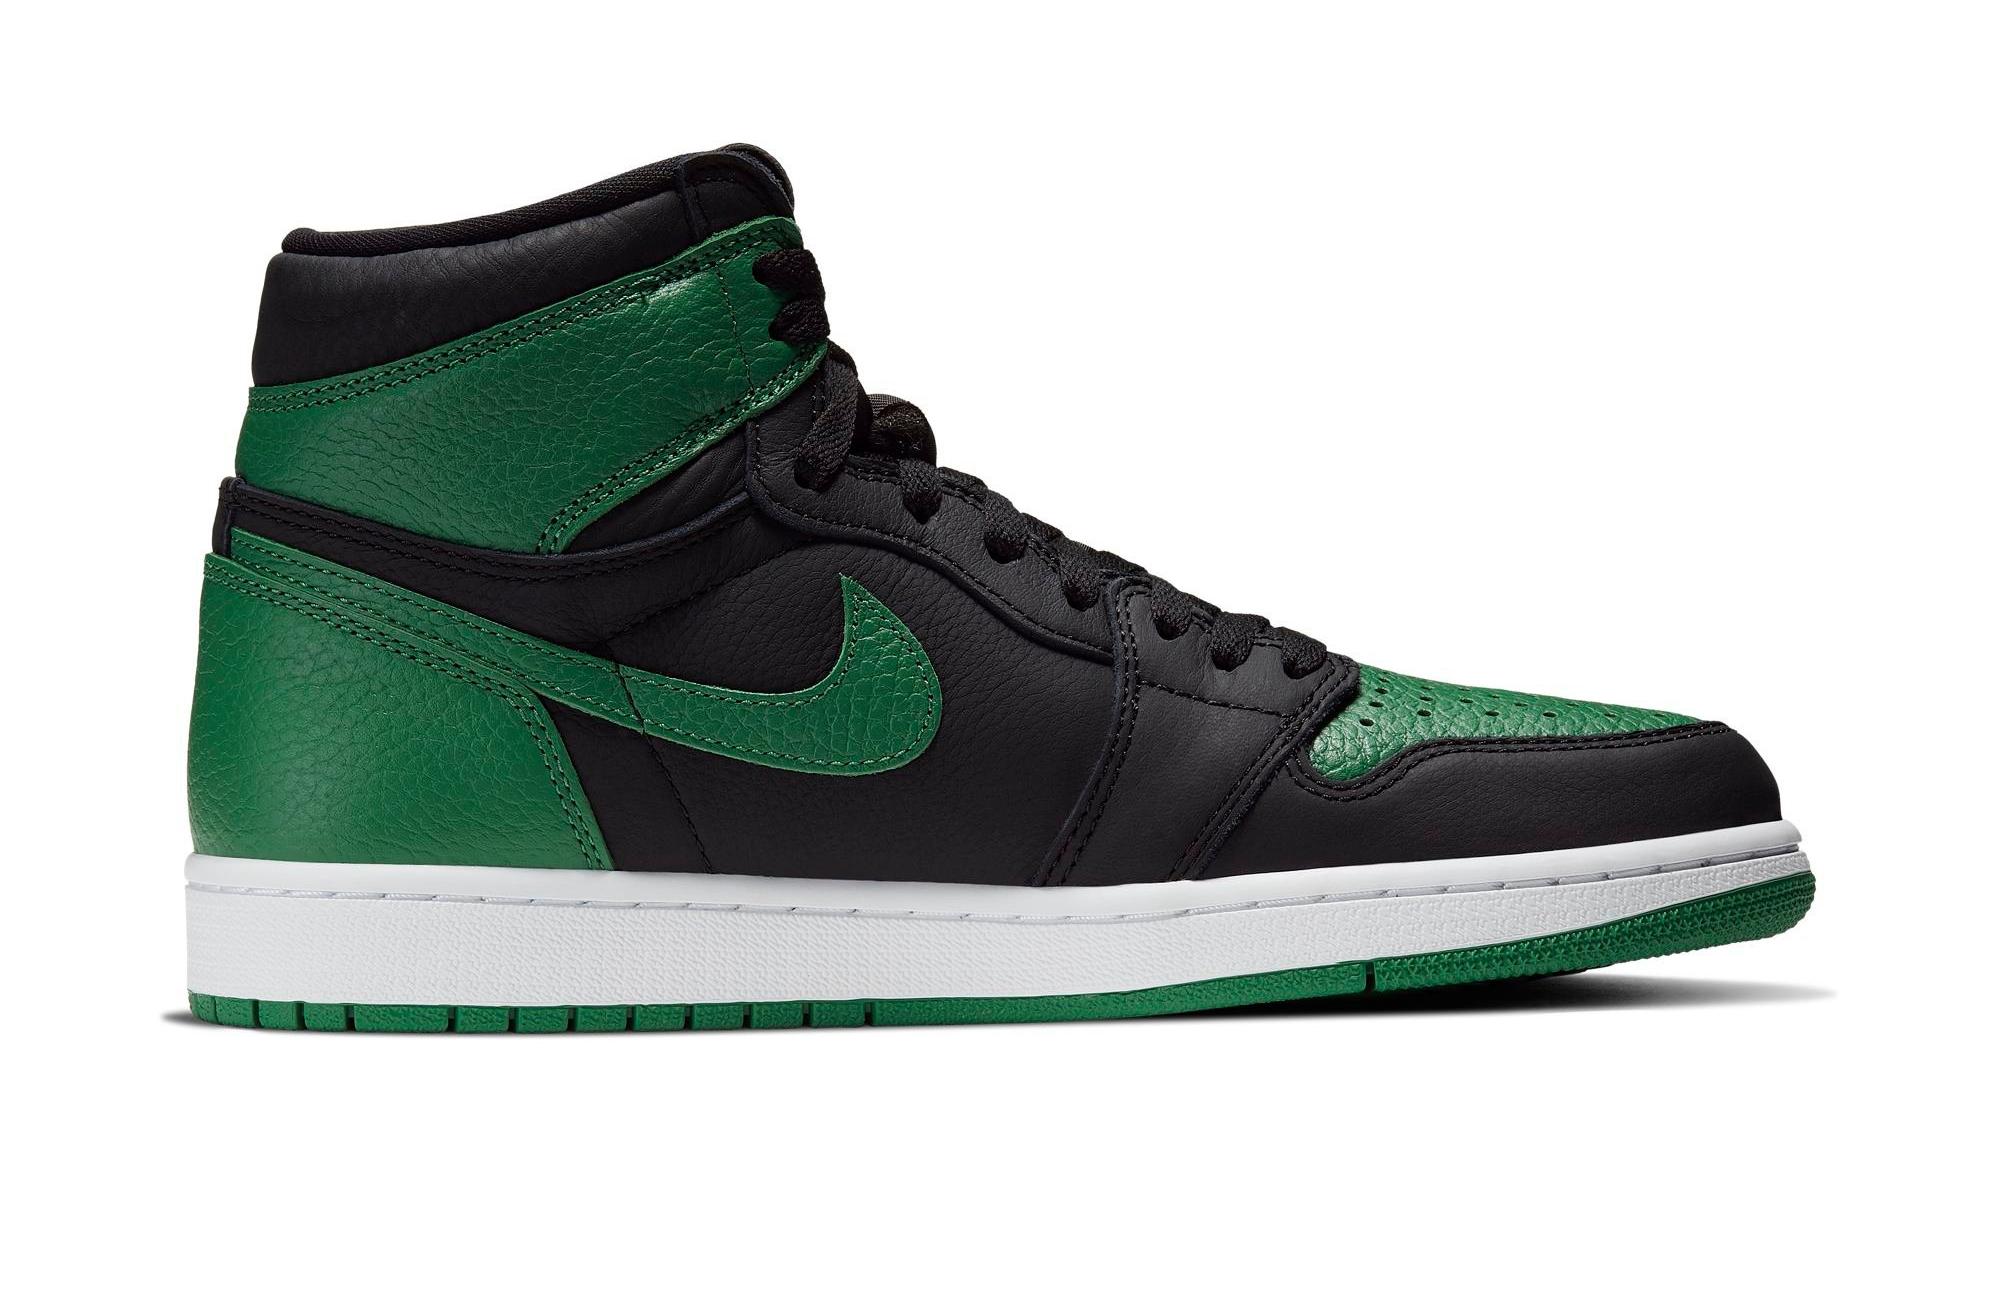 Sneakers Release – Jordan 1 Retro High OG “Pine Green